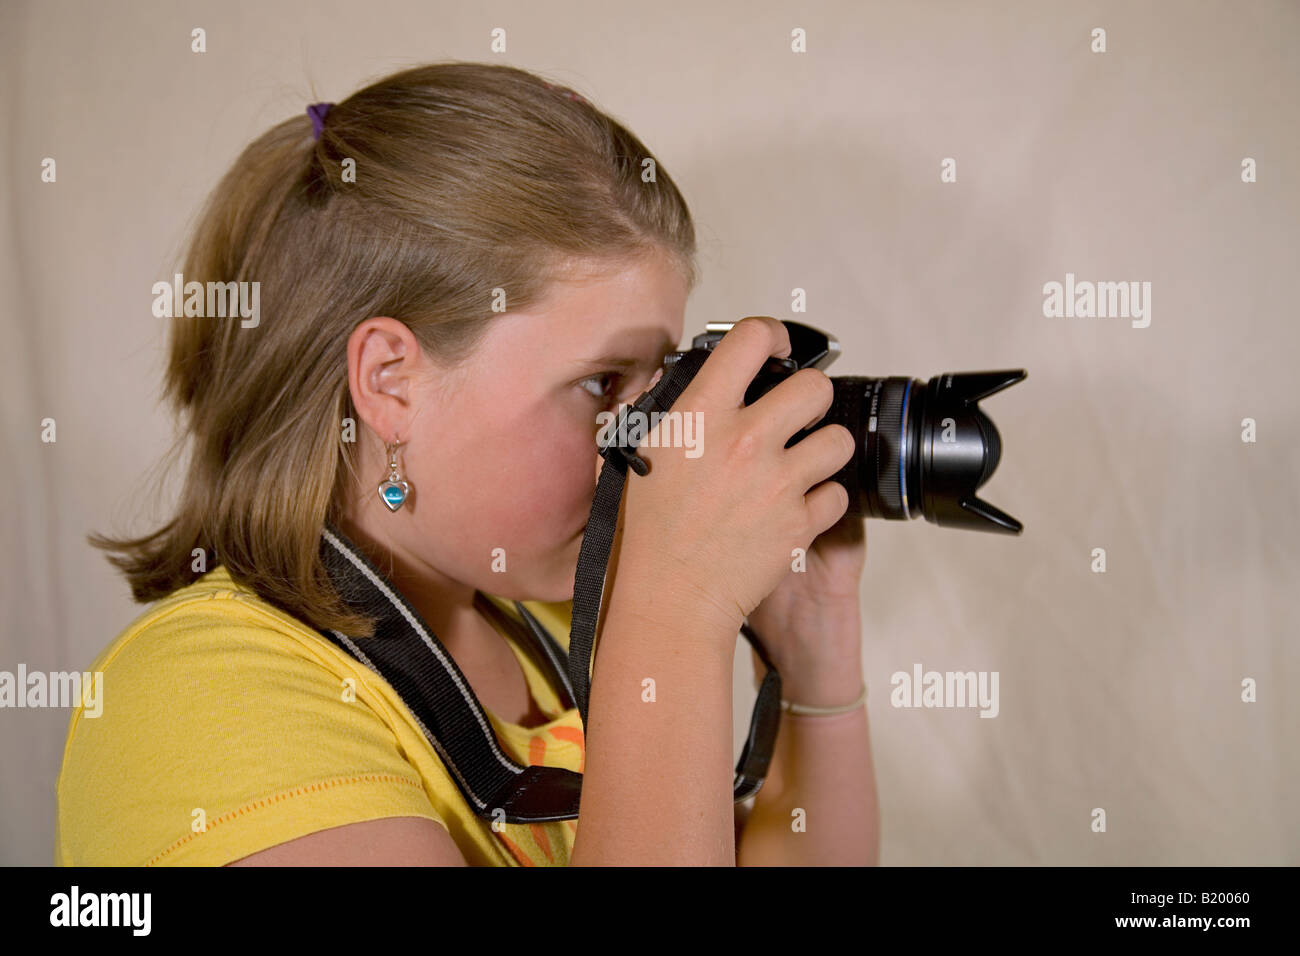 Ein Teenager im Alter von Mädchen mit dem Fotografieren mit einer digitalen SLR-Kamera Stockfoto